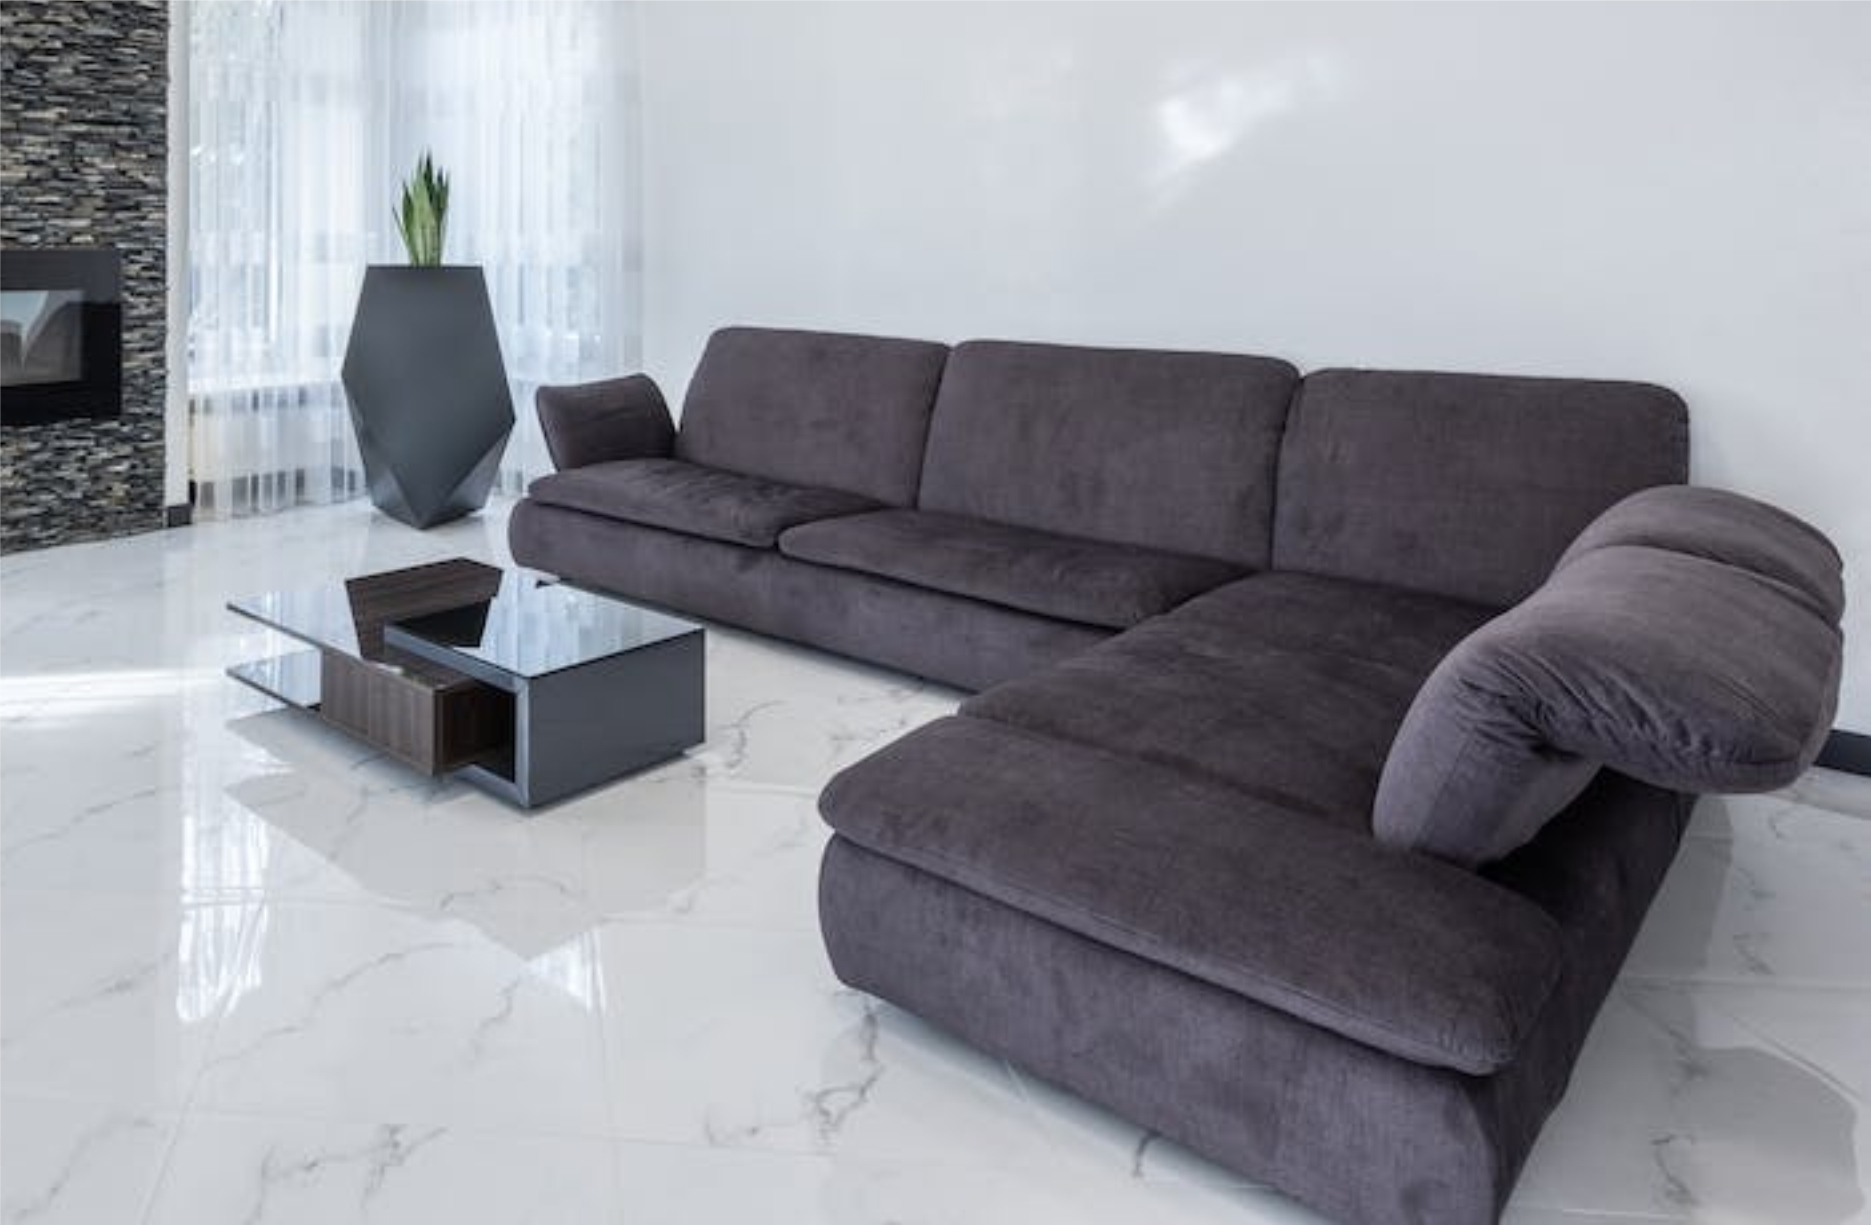 Muebles ergonómicos: confort y salud en el hogar y la oficina 2